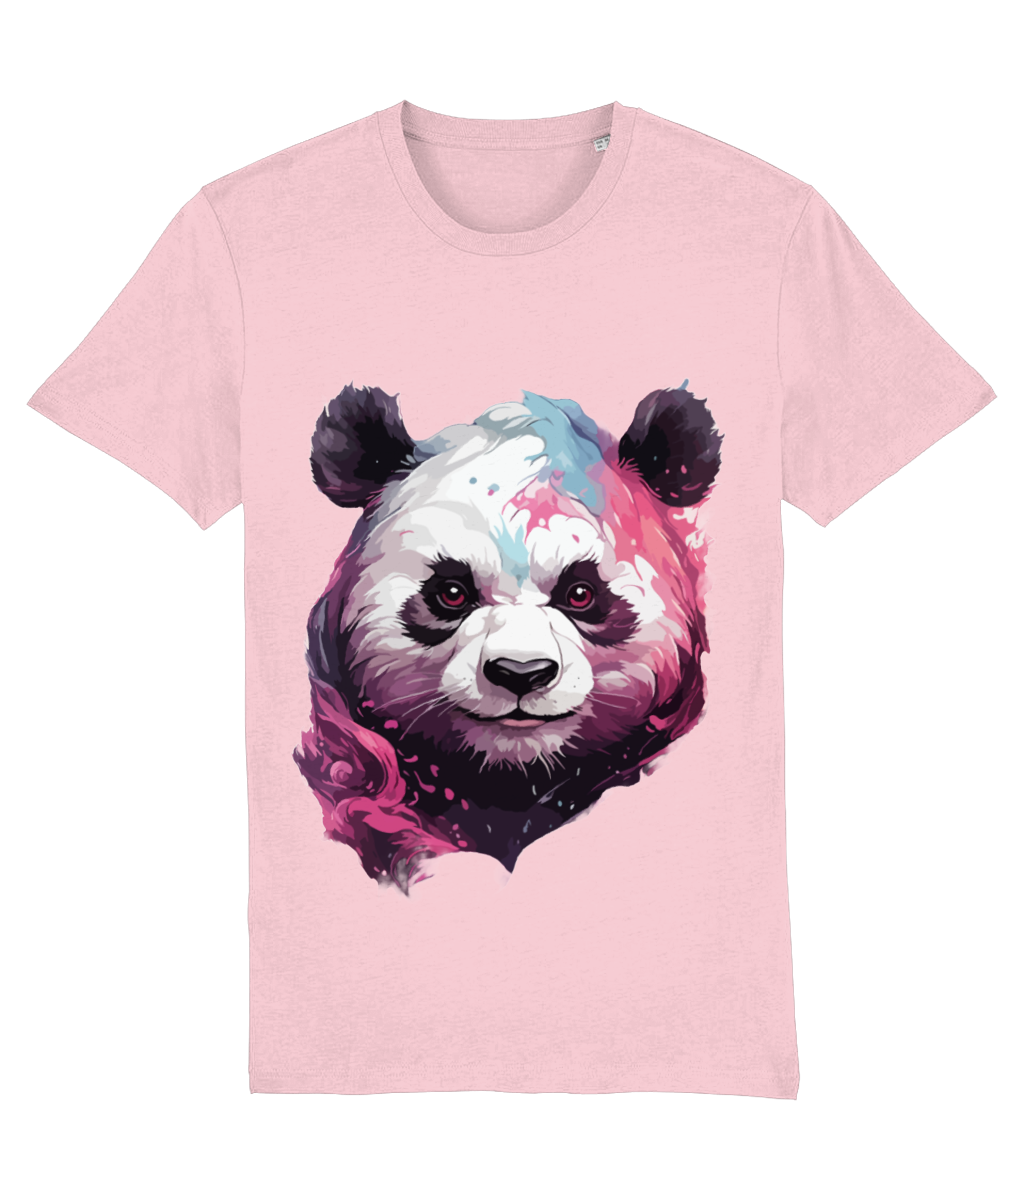 Paint Splash Panda Print T-Shirt